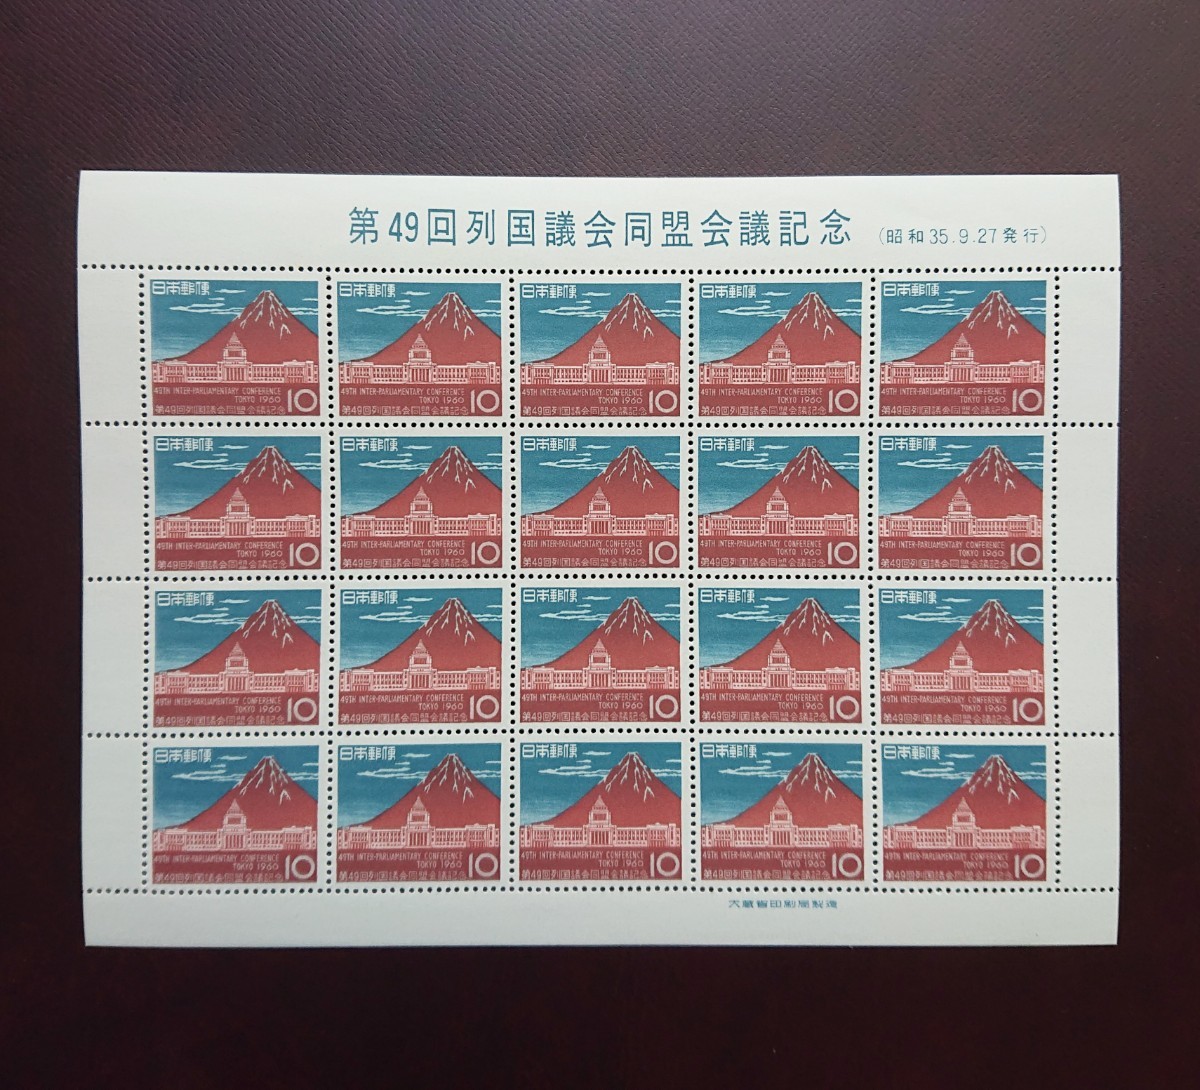 日本記念切手 第49回列国議会同盟会議記念 20面シート 未使用